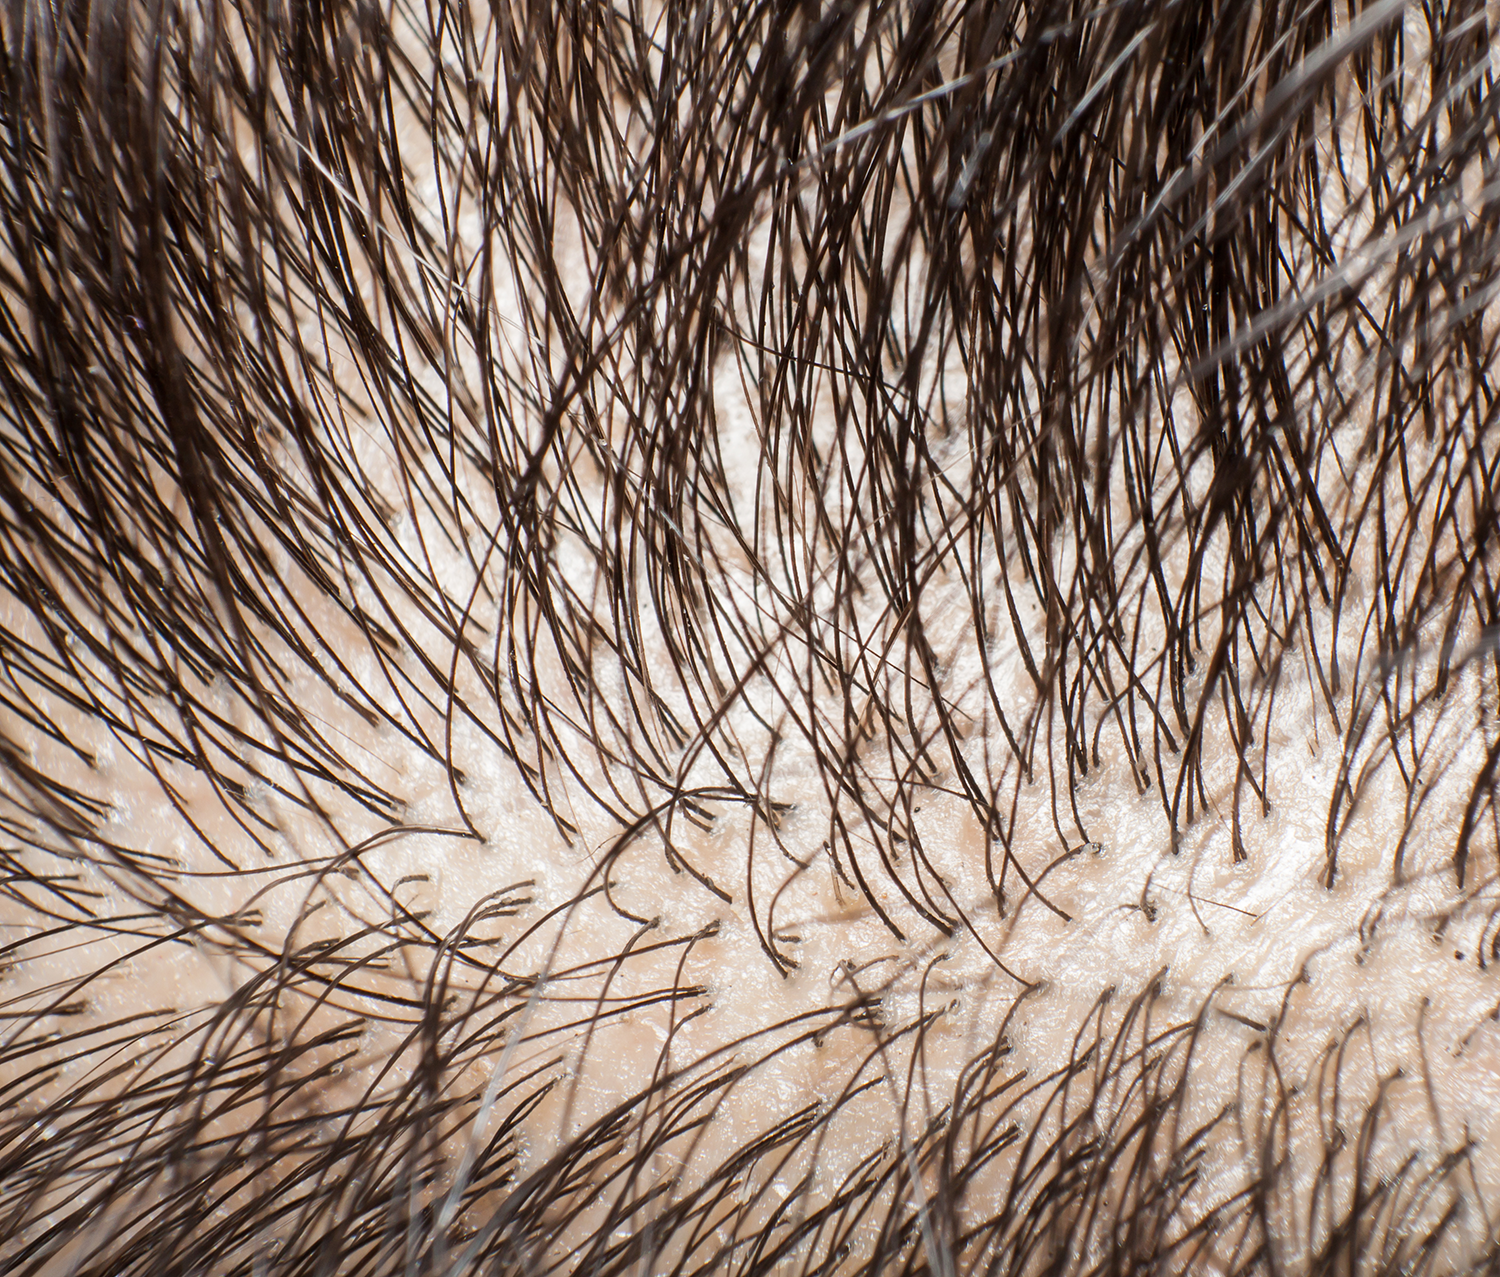 糠秕孢子菌毛囊炎（马拉色菌毛囊炎）个人治疗经历 - 知乎